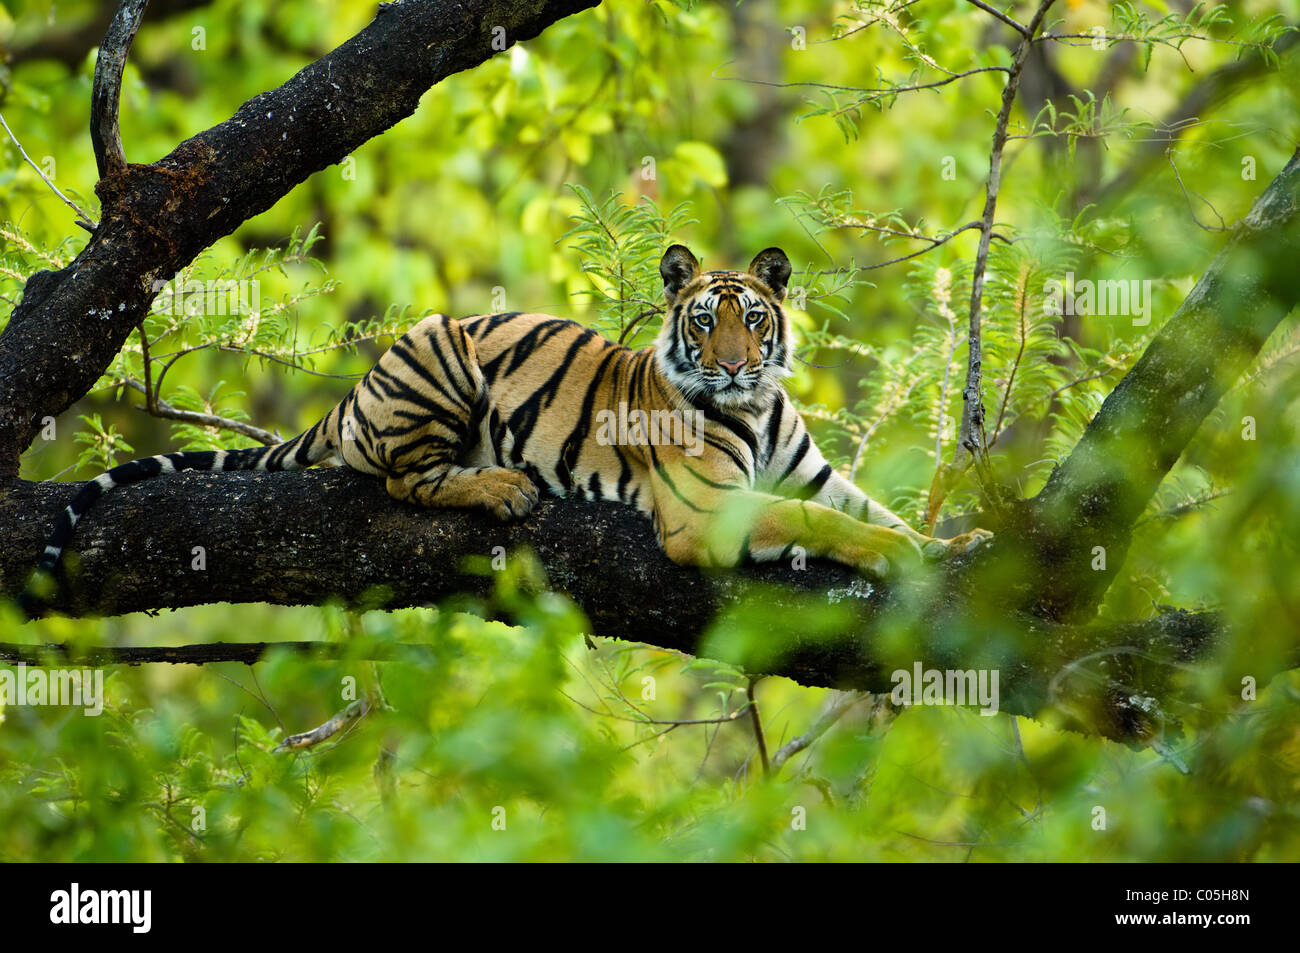 Adolescent tigre du Bengale (environ 15 mois) reposant dans un arbre. Bandhavgarh NP, Madhya Pradesh, Inde. Banque D'Images